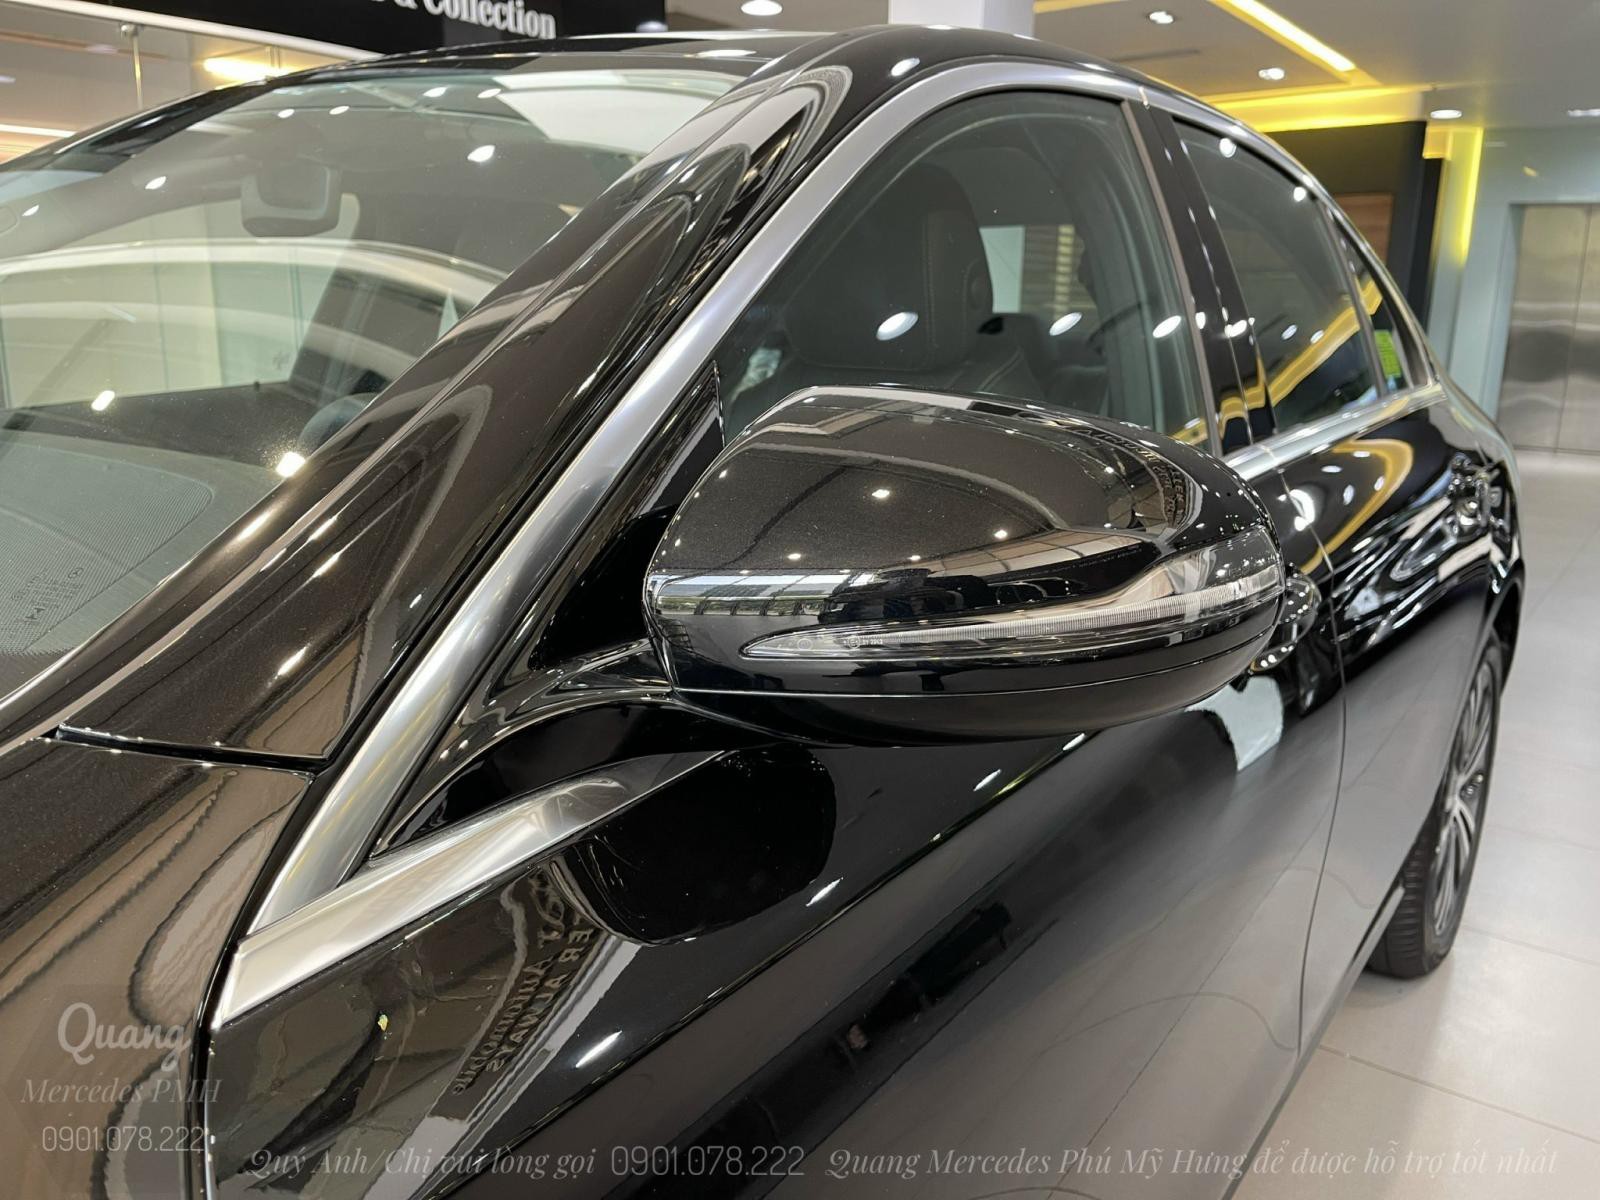 Mercedes E180 2022 Màu Đen - Cọc Sớm Giao Ngay Quận Tân Bình - Trả góp tới 80% | Lãi suất 7.5%/năm - 0901 078 222